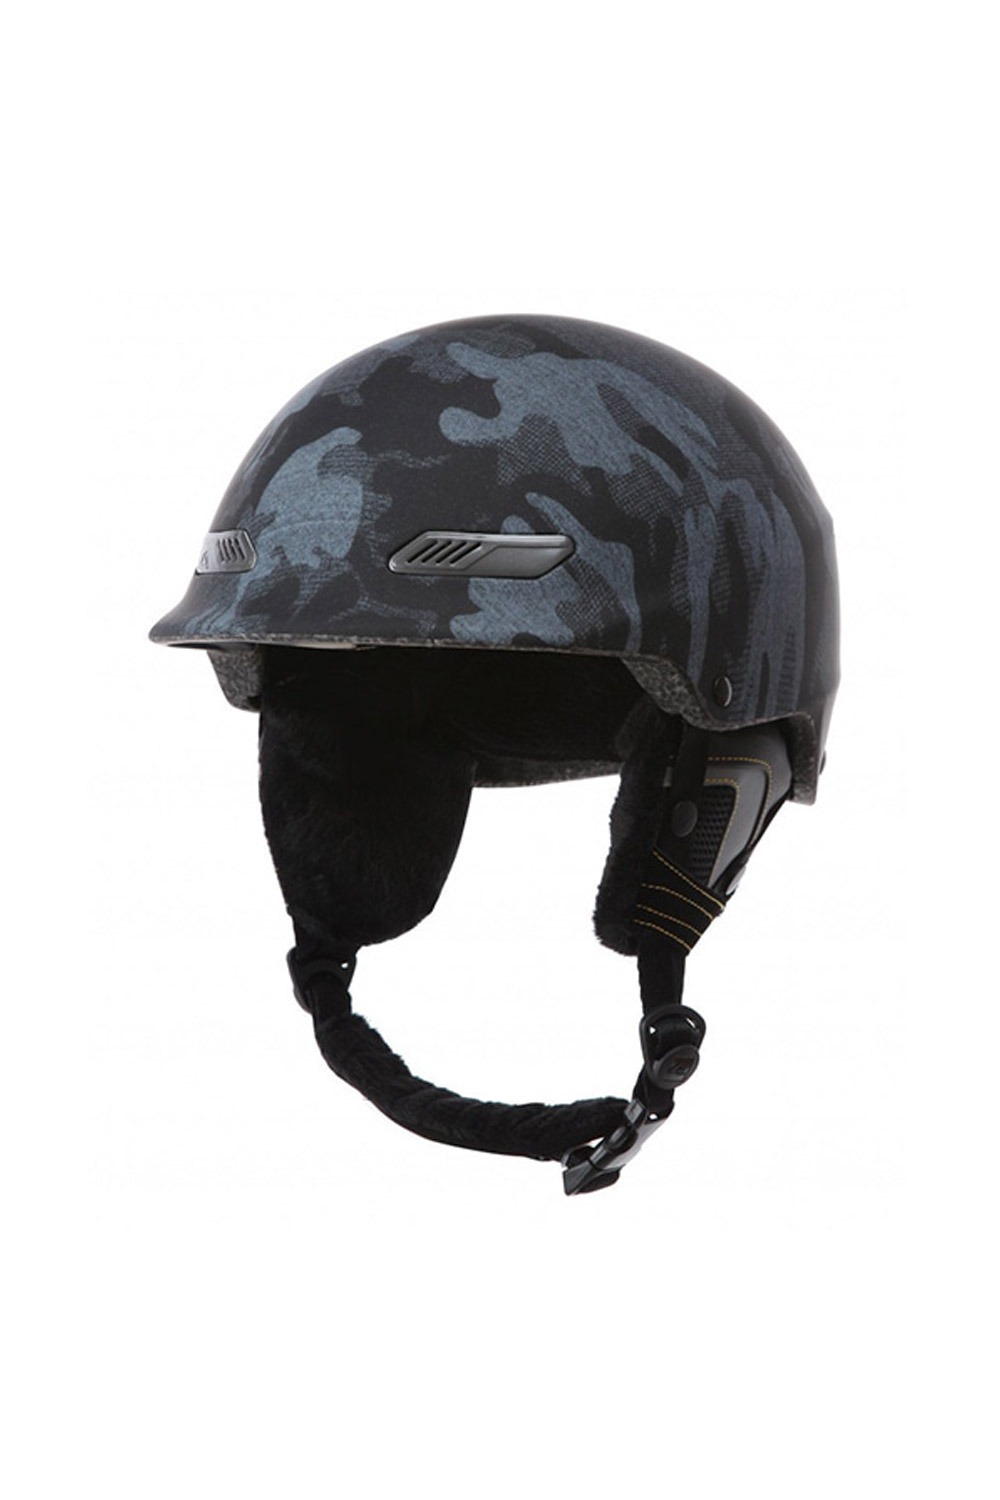 퀵실버 헬멧  FQS701BK / KV9 QUIKSILVER WILDCAT